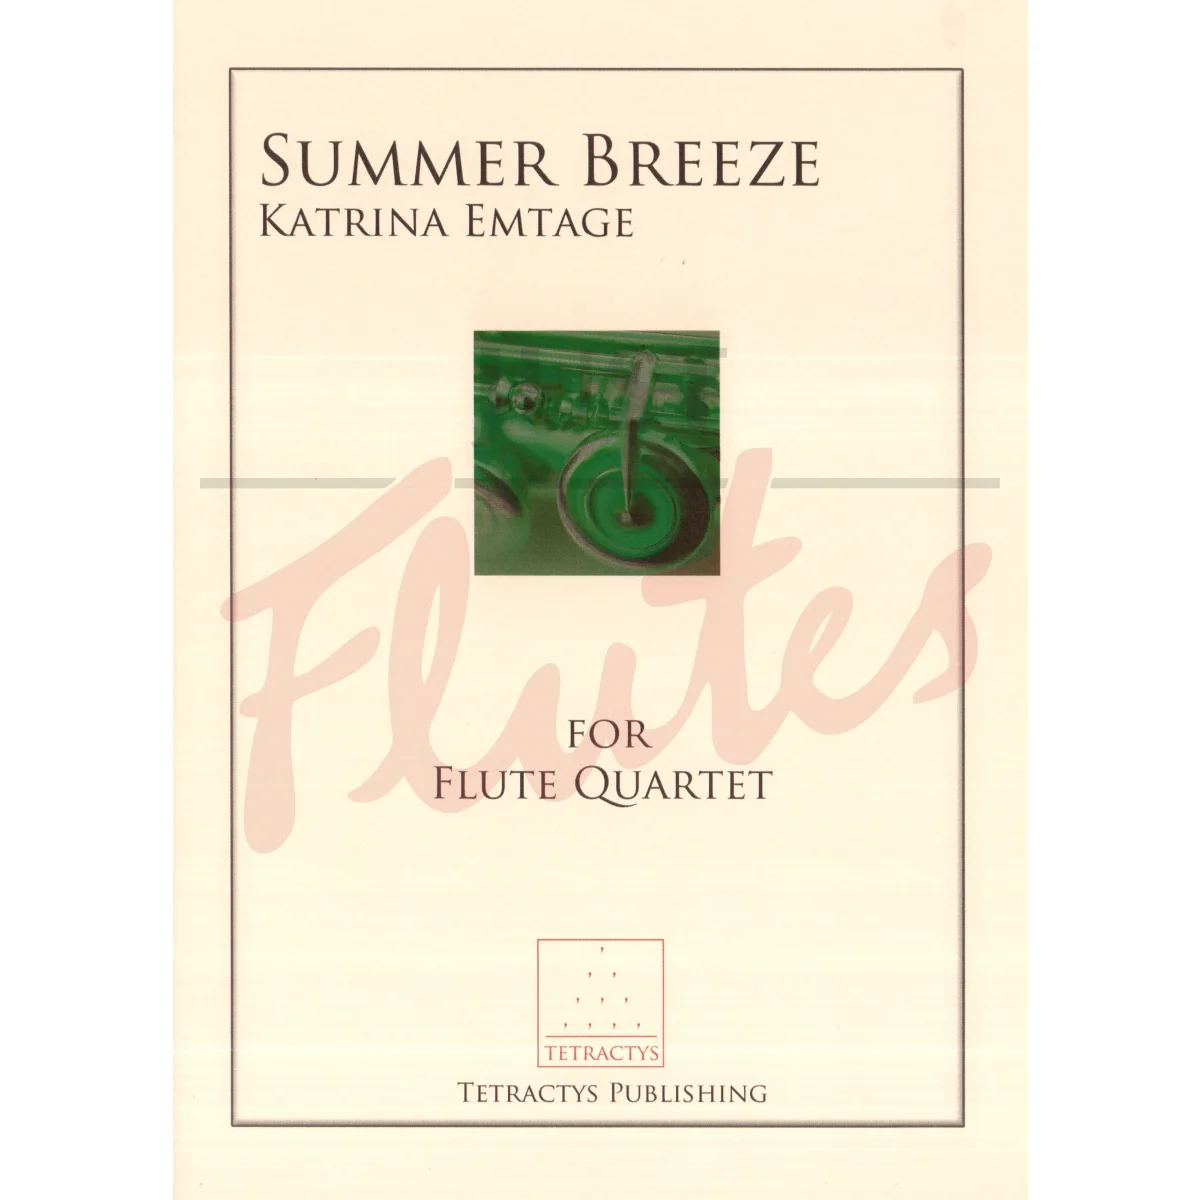 Summer Breeze for Mixed Flute Quartet